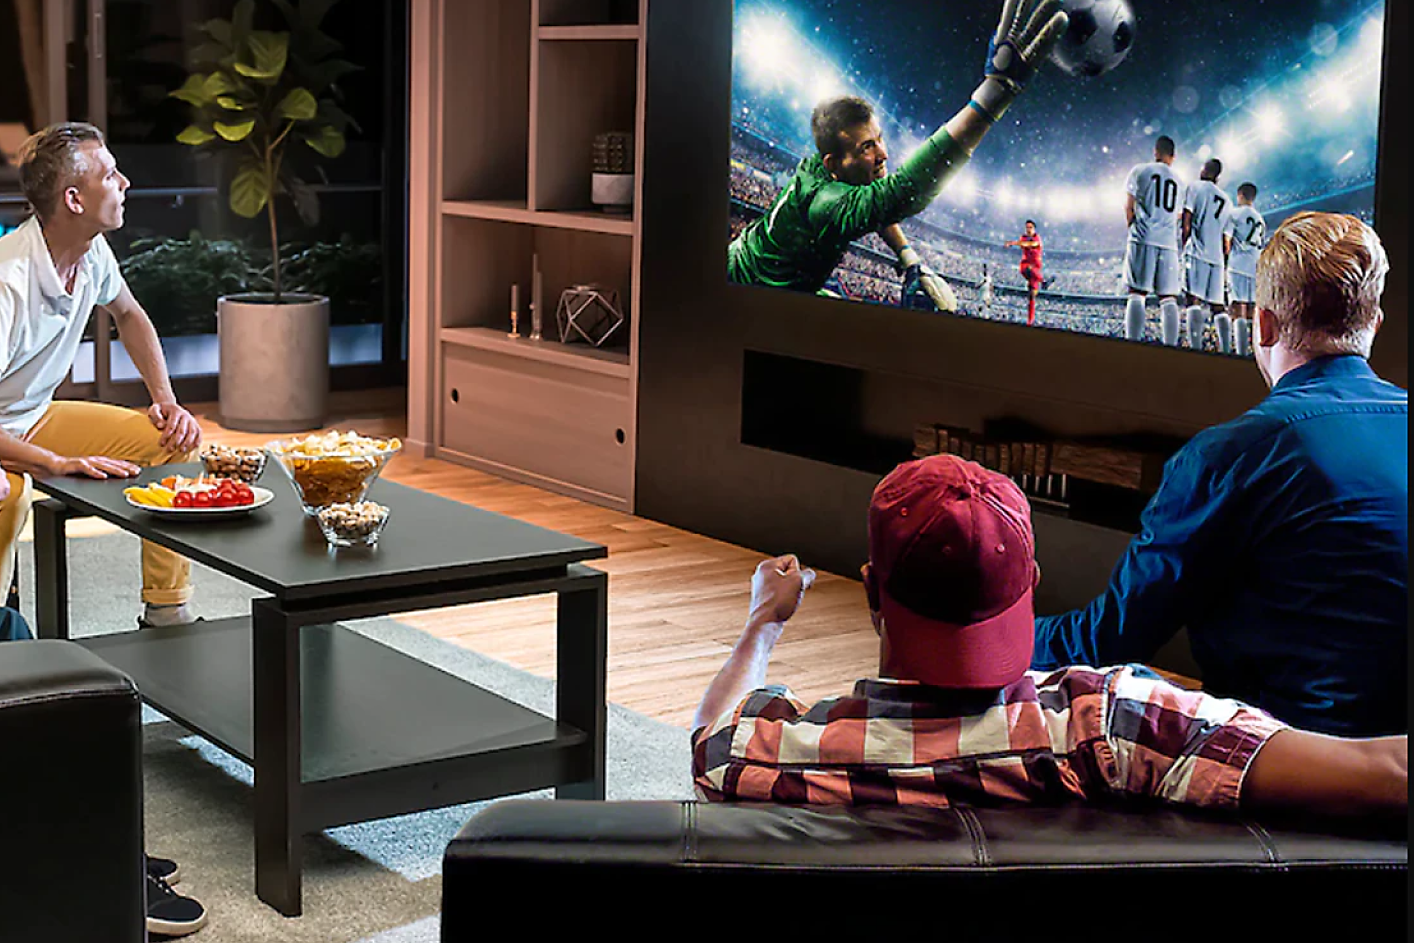 Traja muži, ktorí sledujú futbal na televízore s veľkou obrazovkou